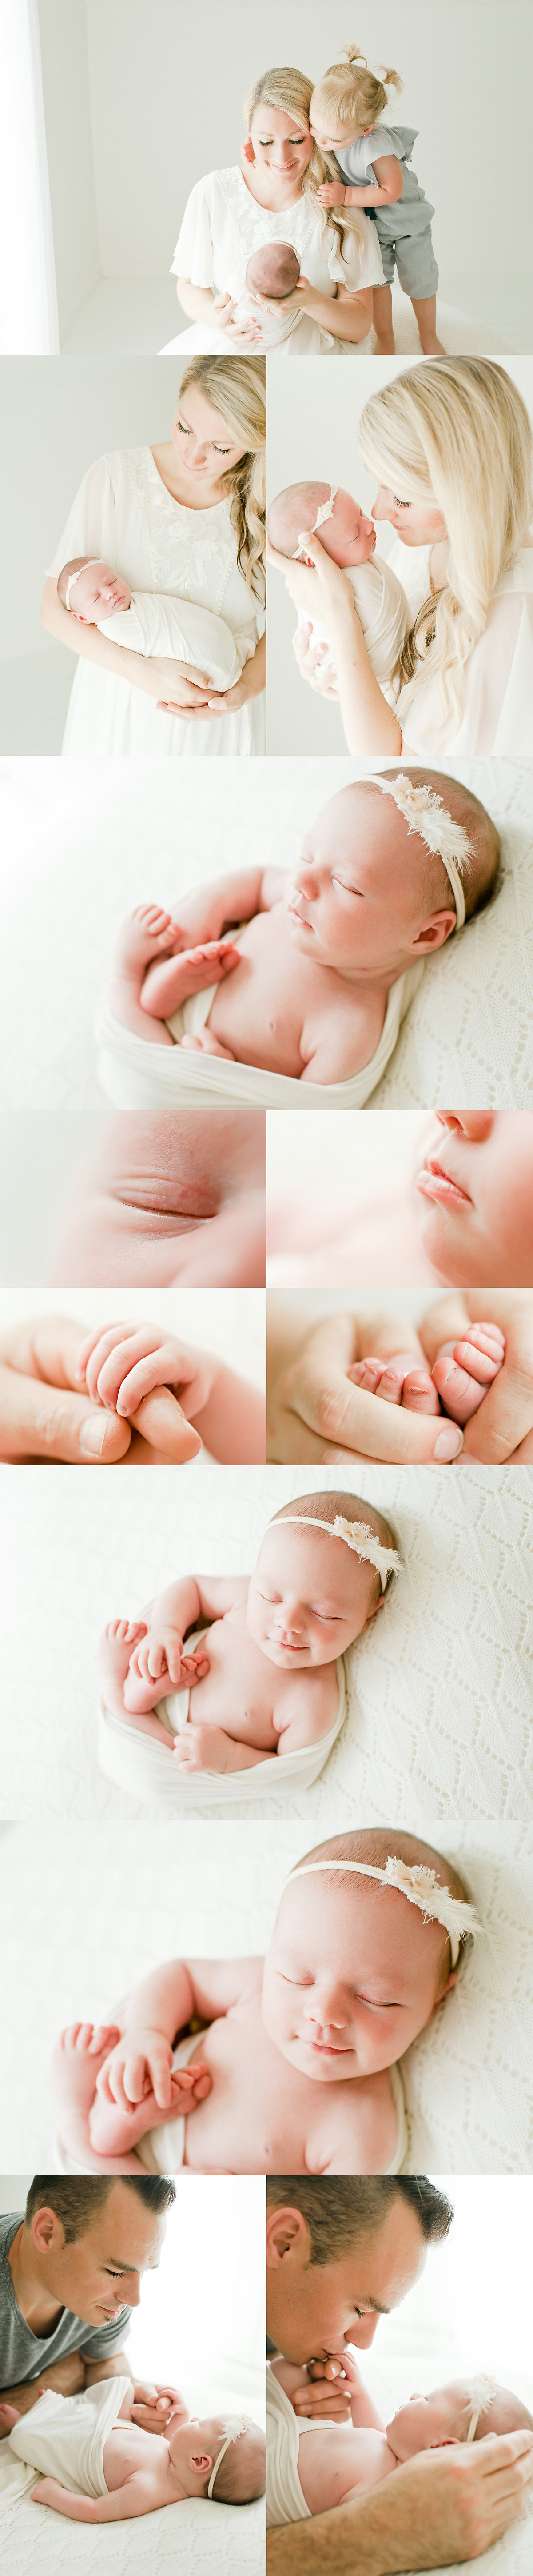 newborn baby details